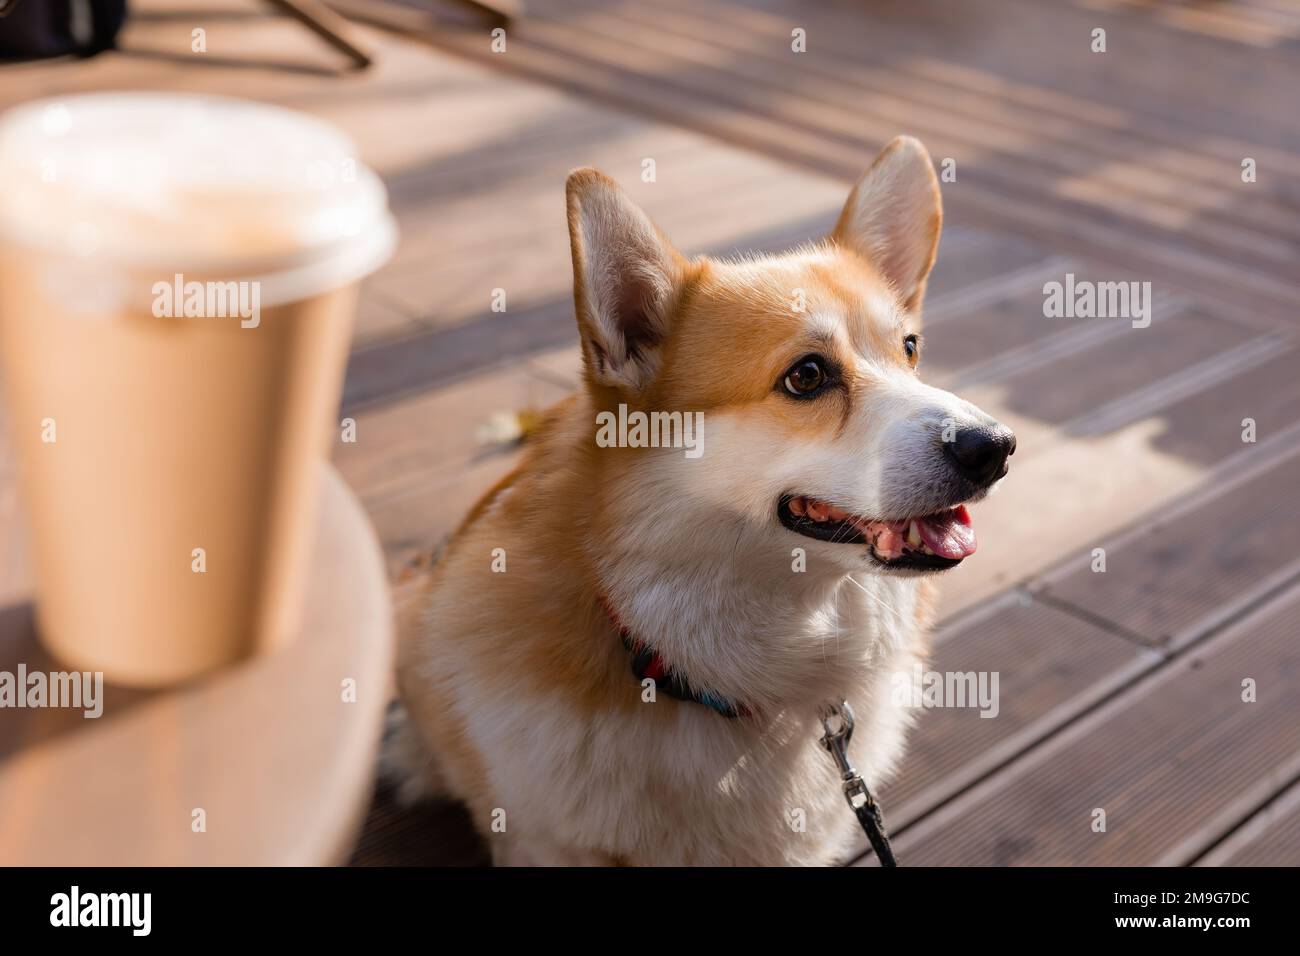 carino corgi cane su una passeggiata in autunno in un bar sulla veranda bere caffè. Caffetteria in cui sono ammessi i cani. Foto di alta qualità Foto Stock